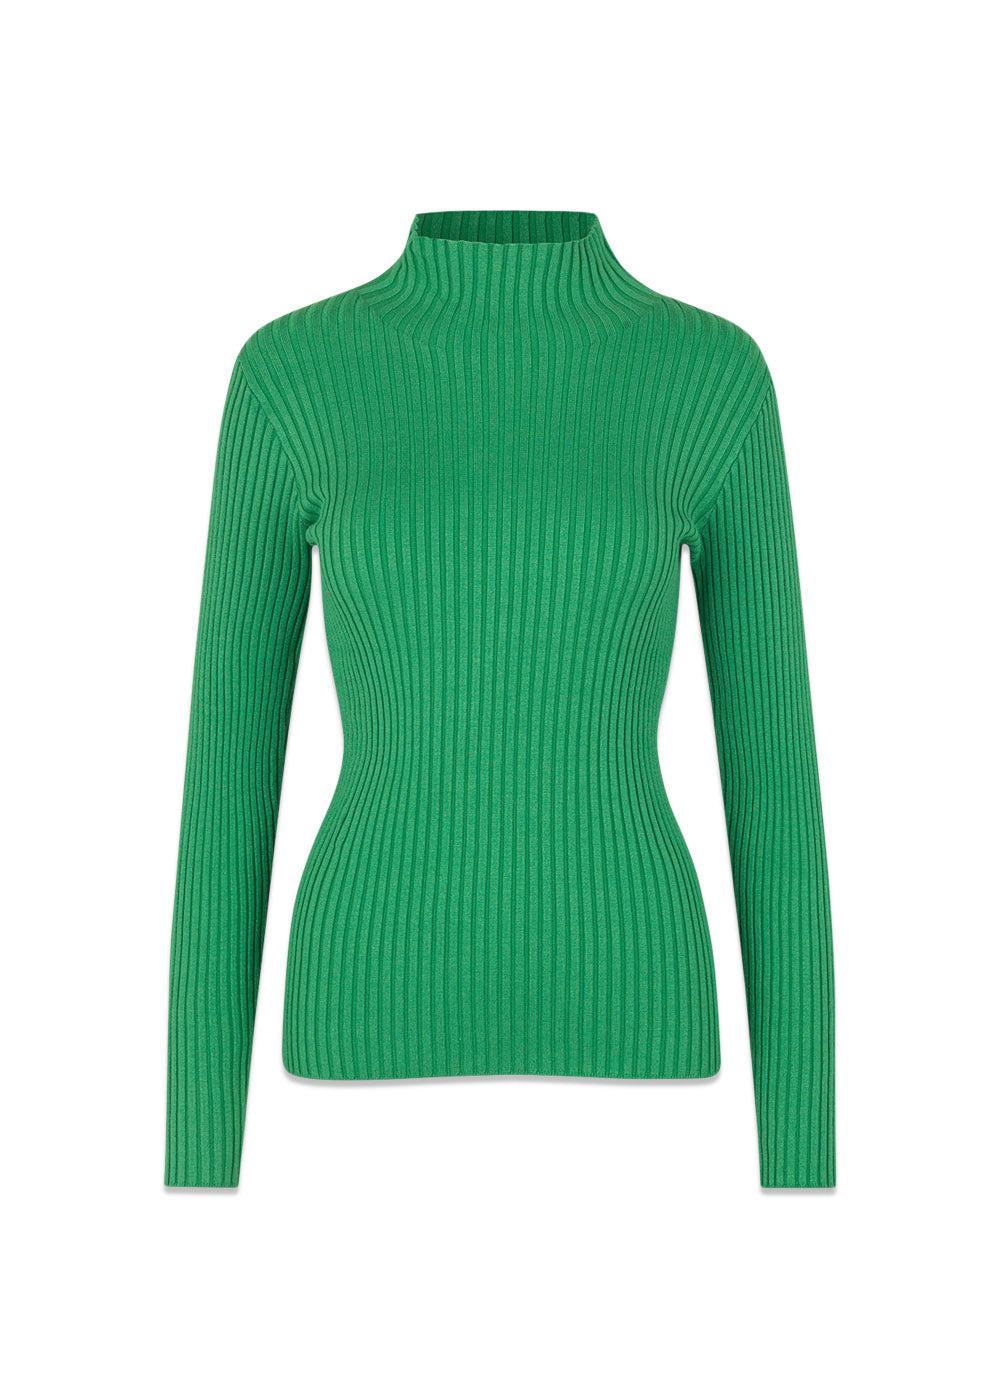 Modströms CateMD t-neck - Faded Green. Køb blouses her.